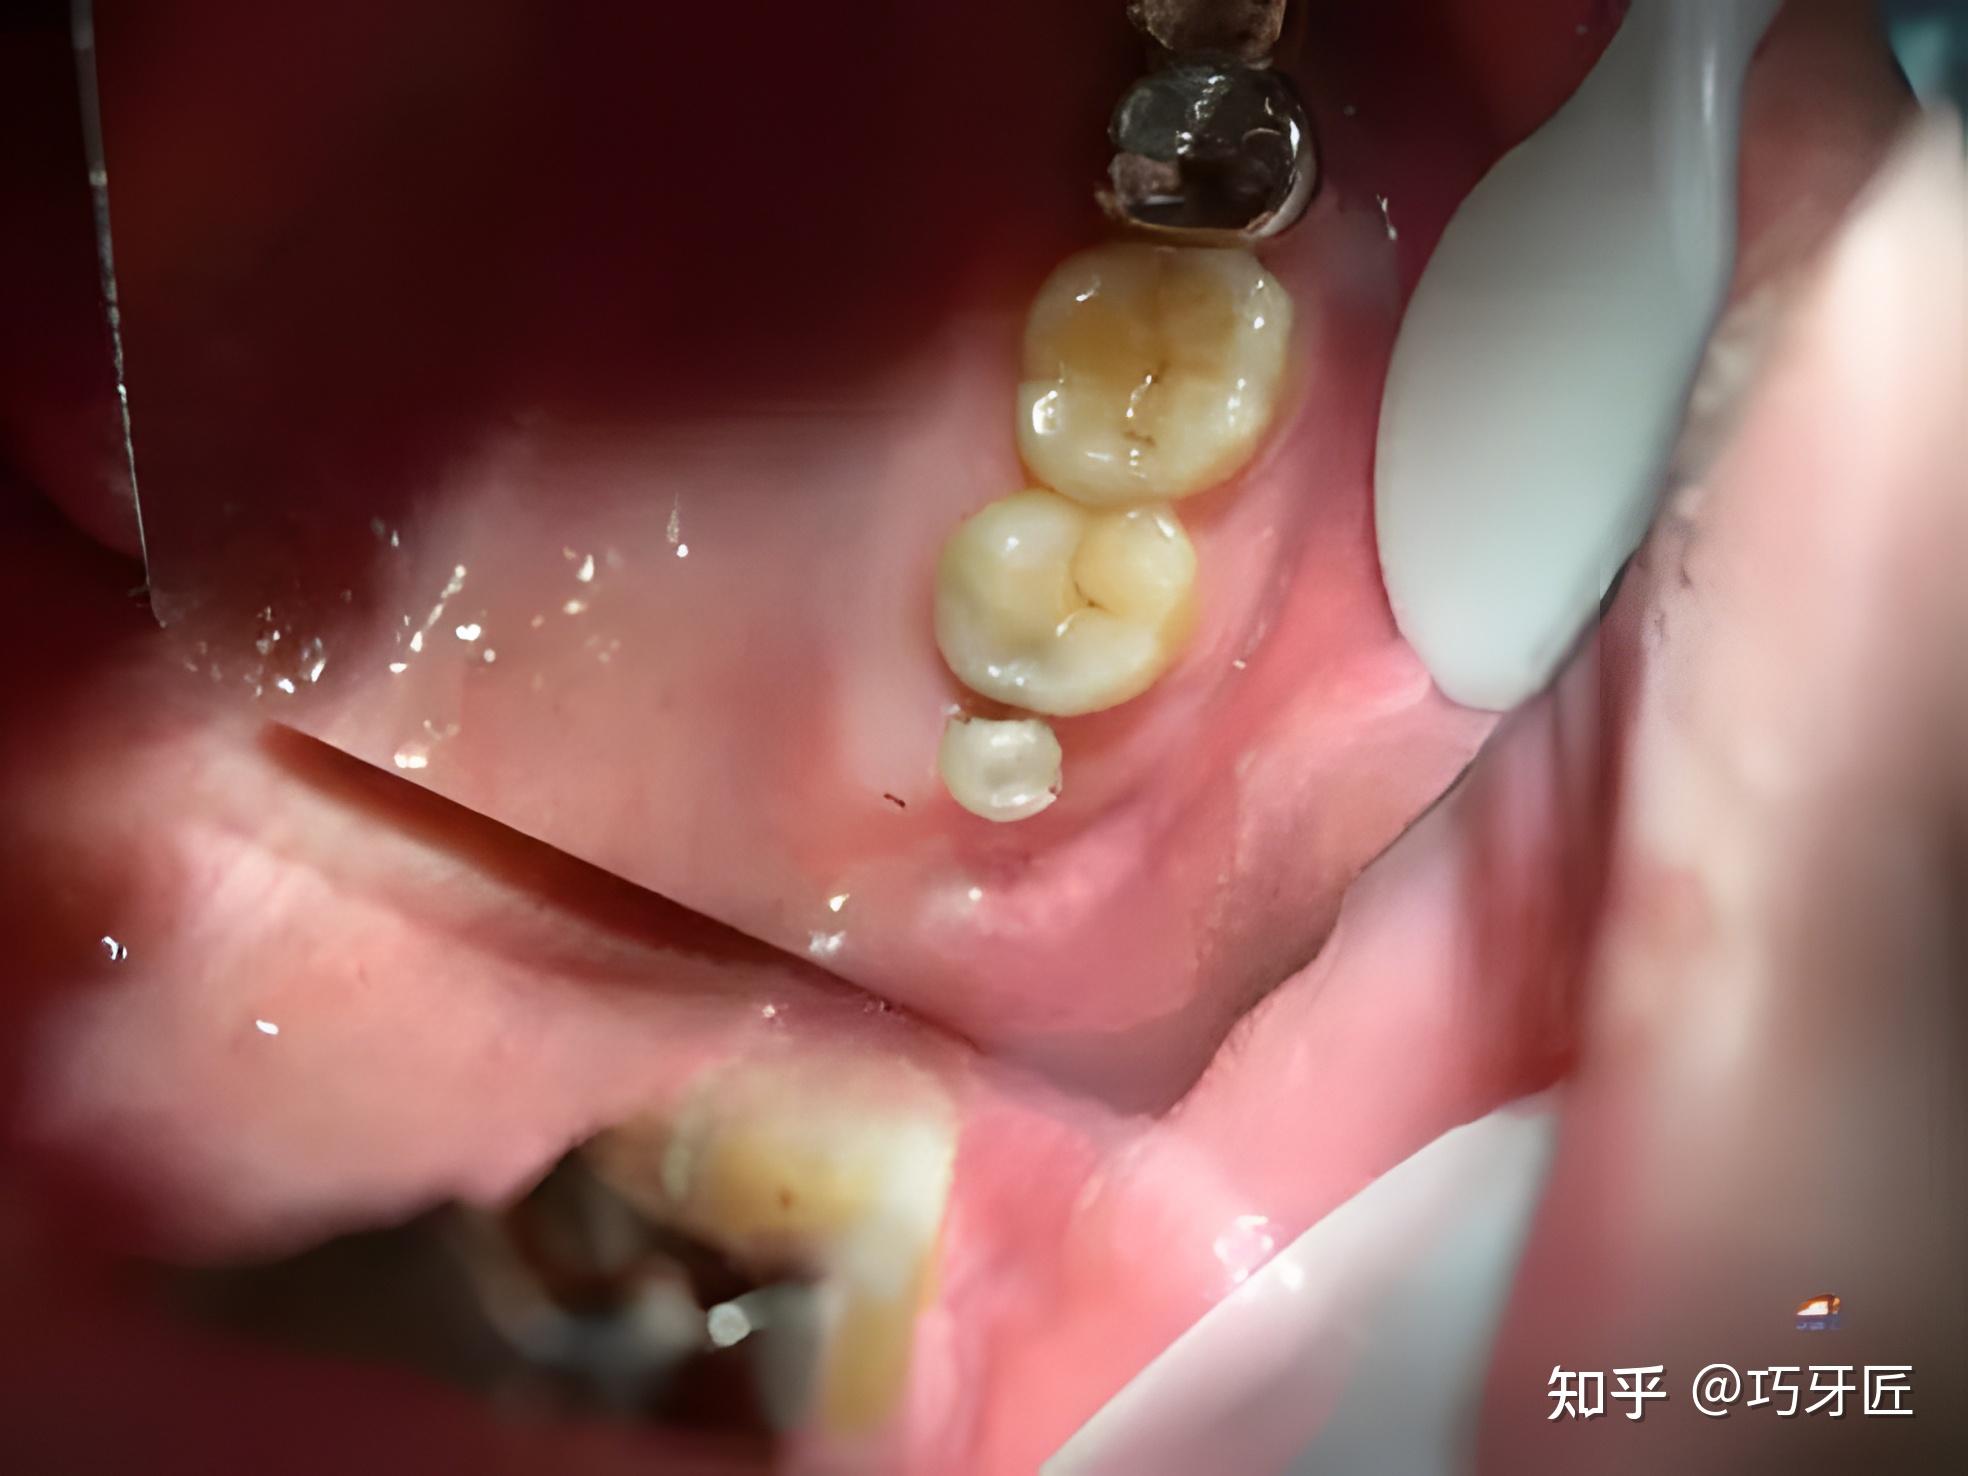 牙医必备收藏的图片合集口腔常见的疾病图片